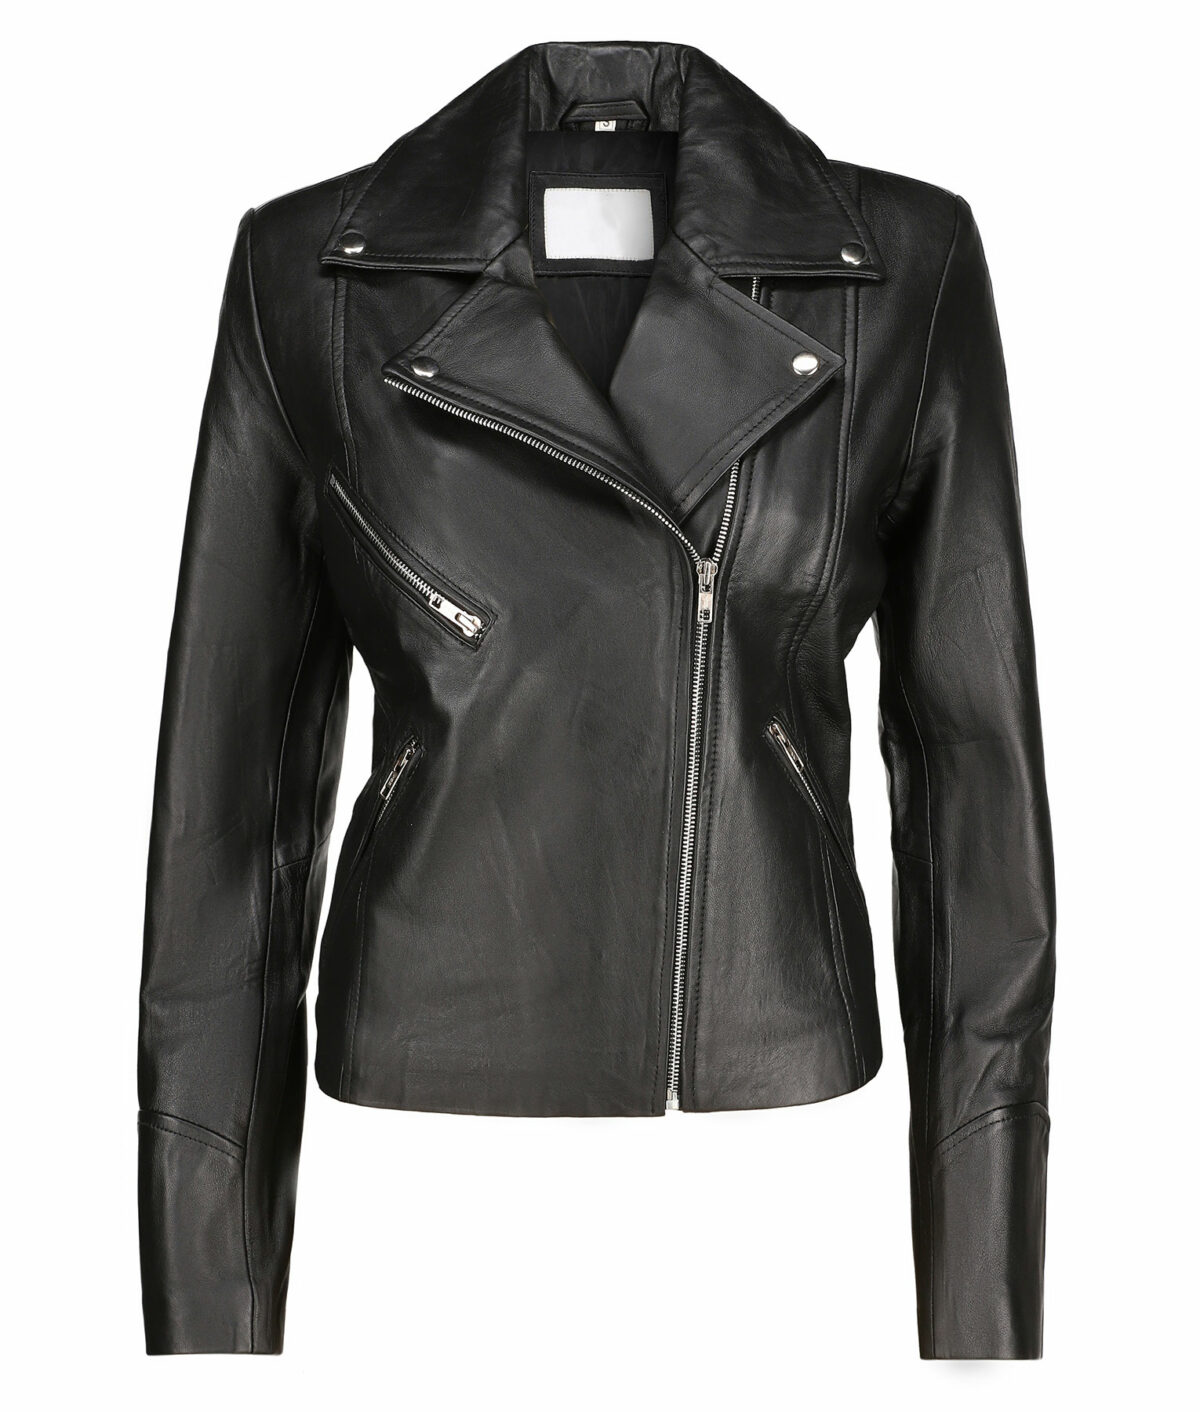 Emily Black Leather Jacket